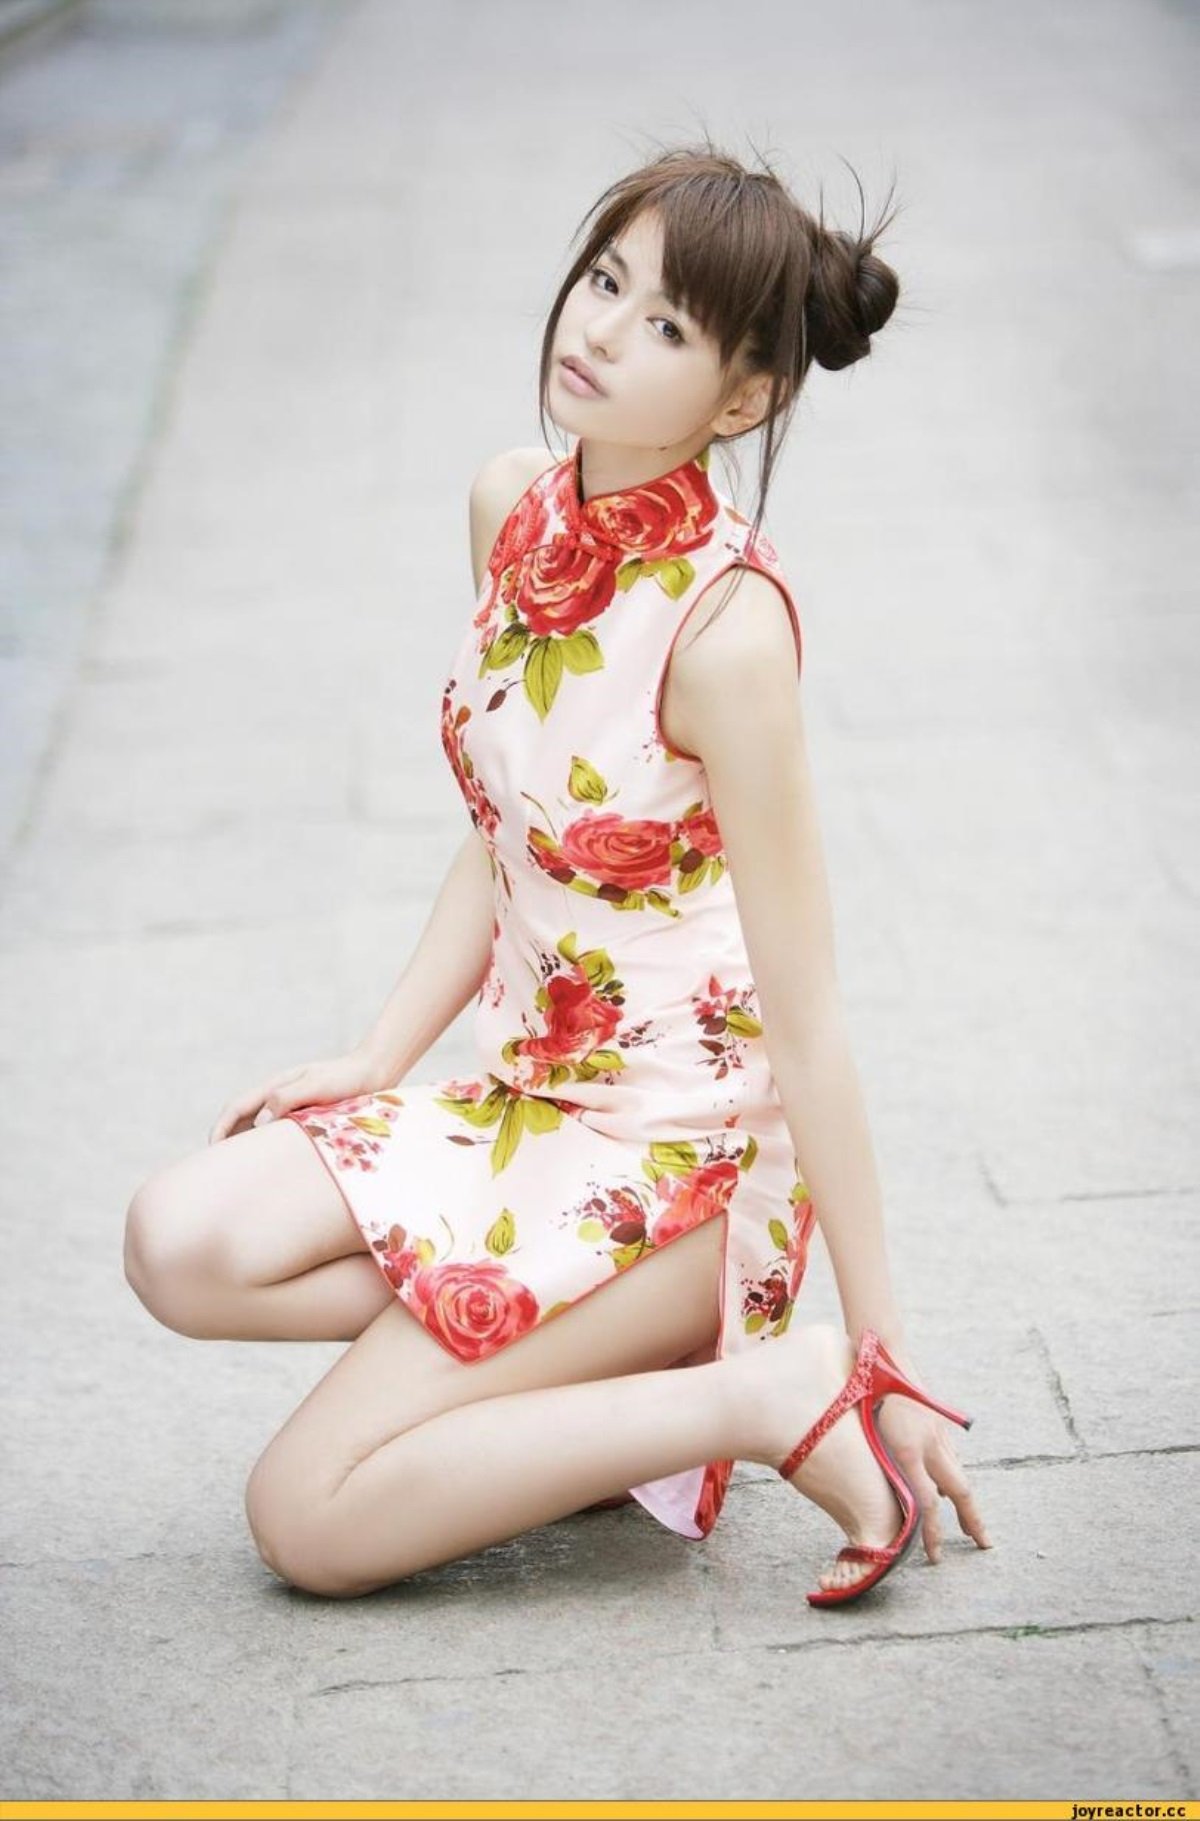 Фото нежной девушки без одежды в японском стиле